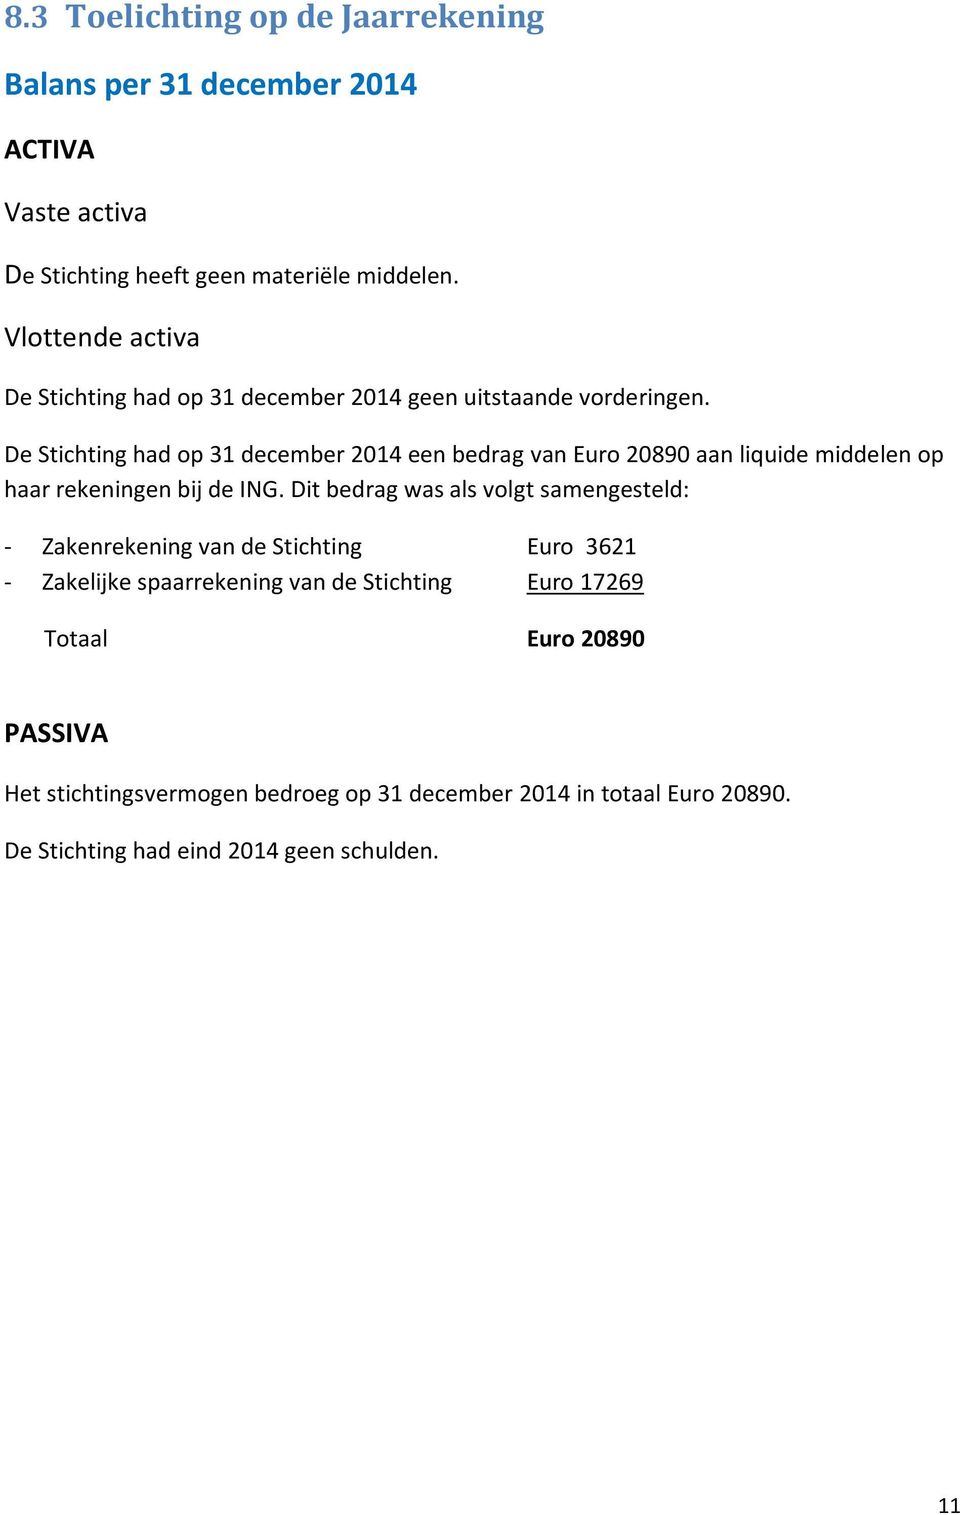 De Stichting had op 31 december 2014 een bedrag van Euro 20890 aan liquide middelen op haar rekeningen bij de ING.